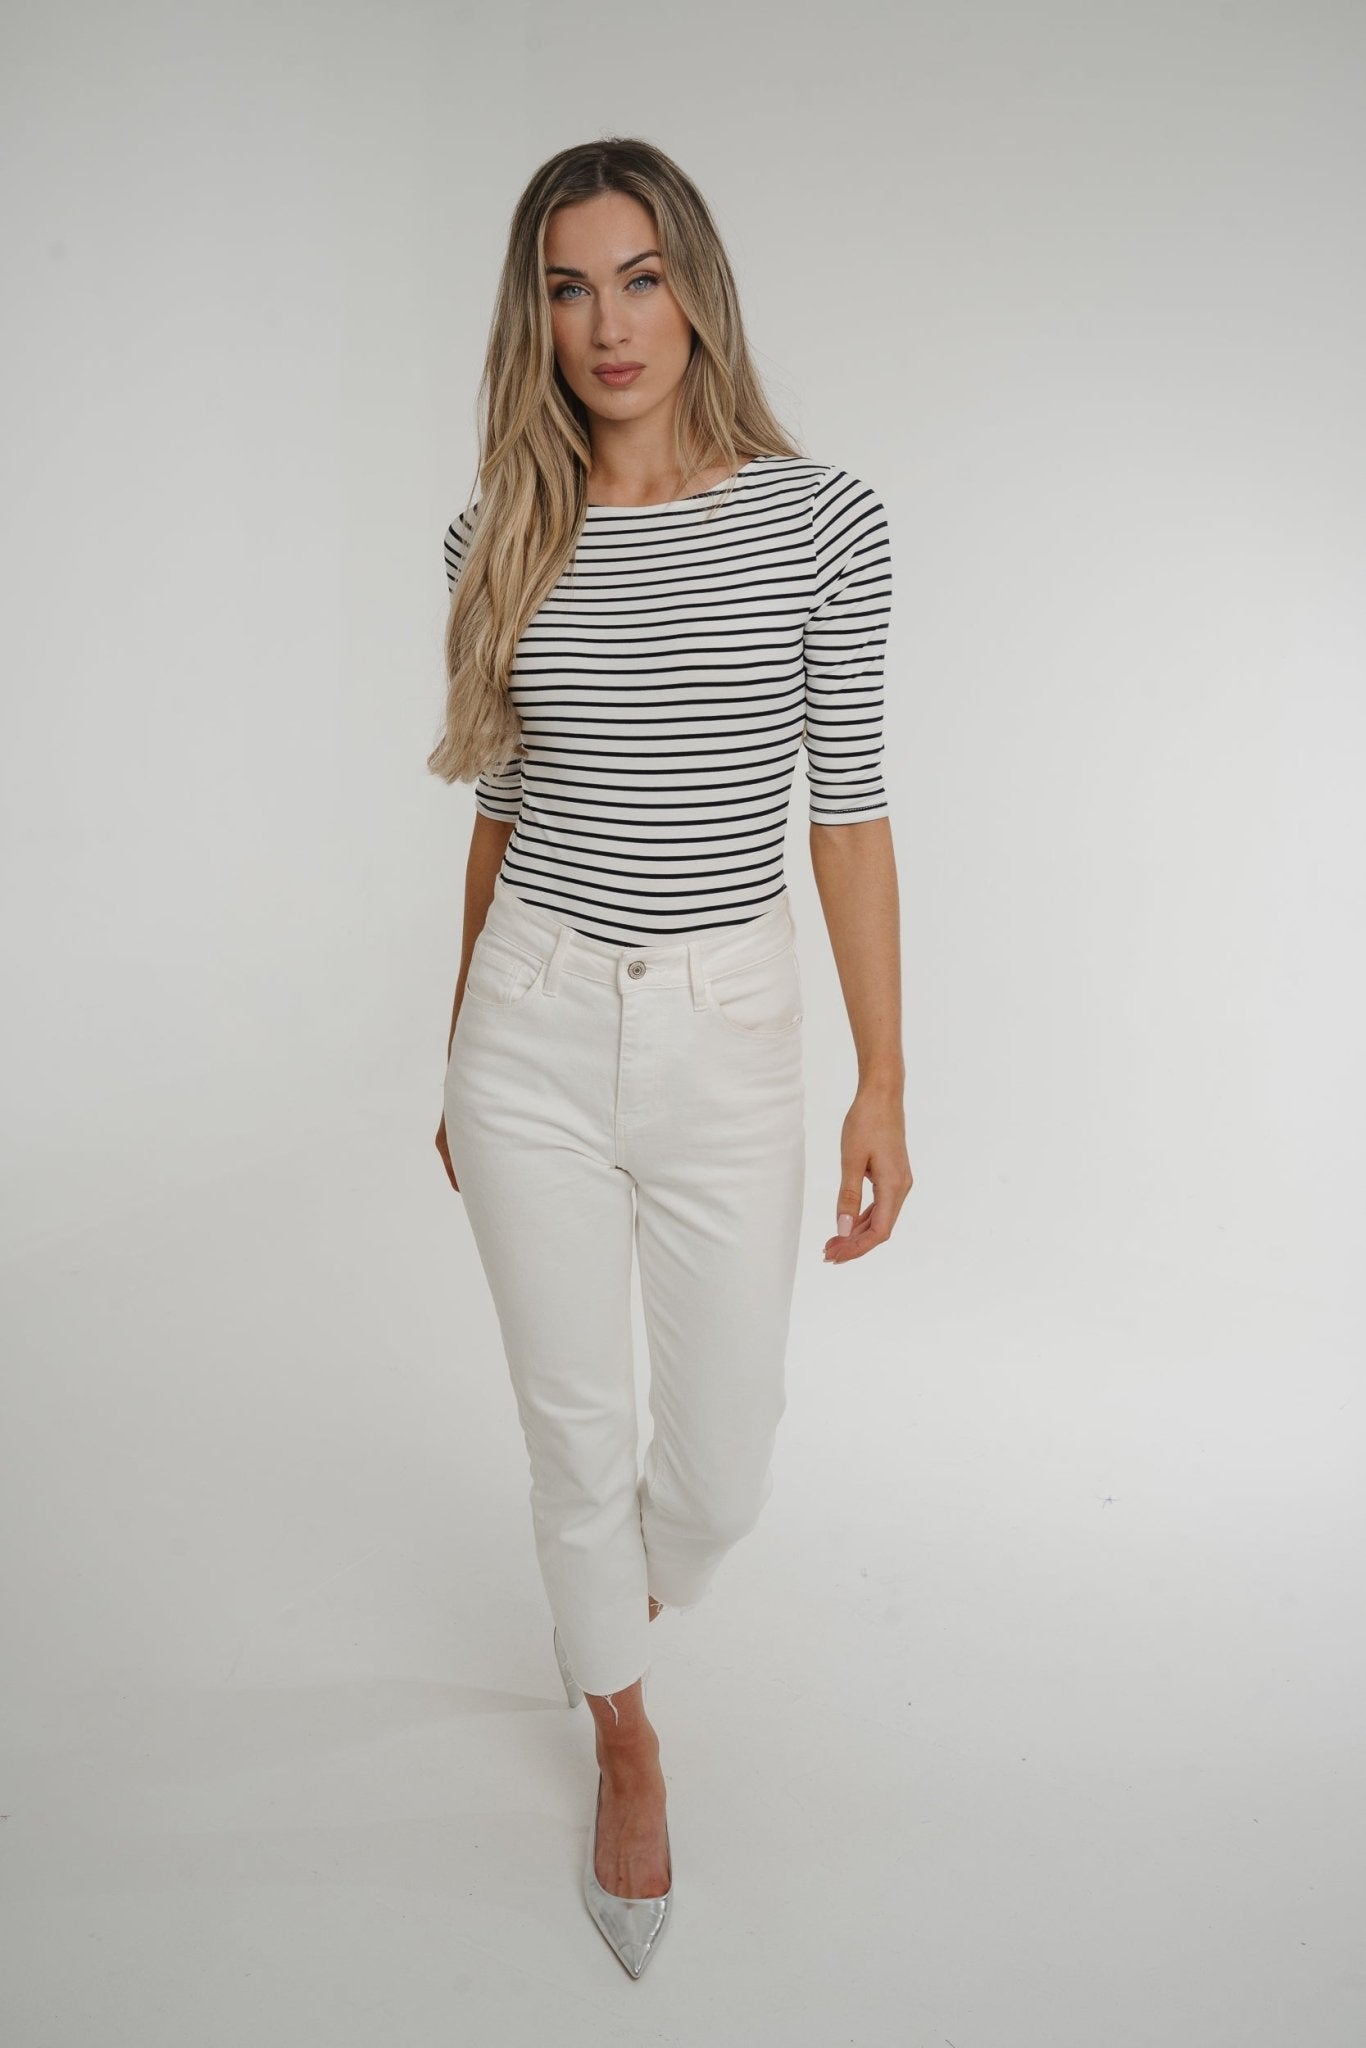 Taylor Stripe Bodysuit In White - The Walk in Wardrobe